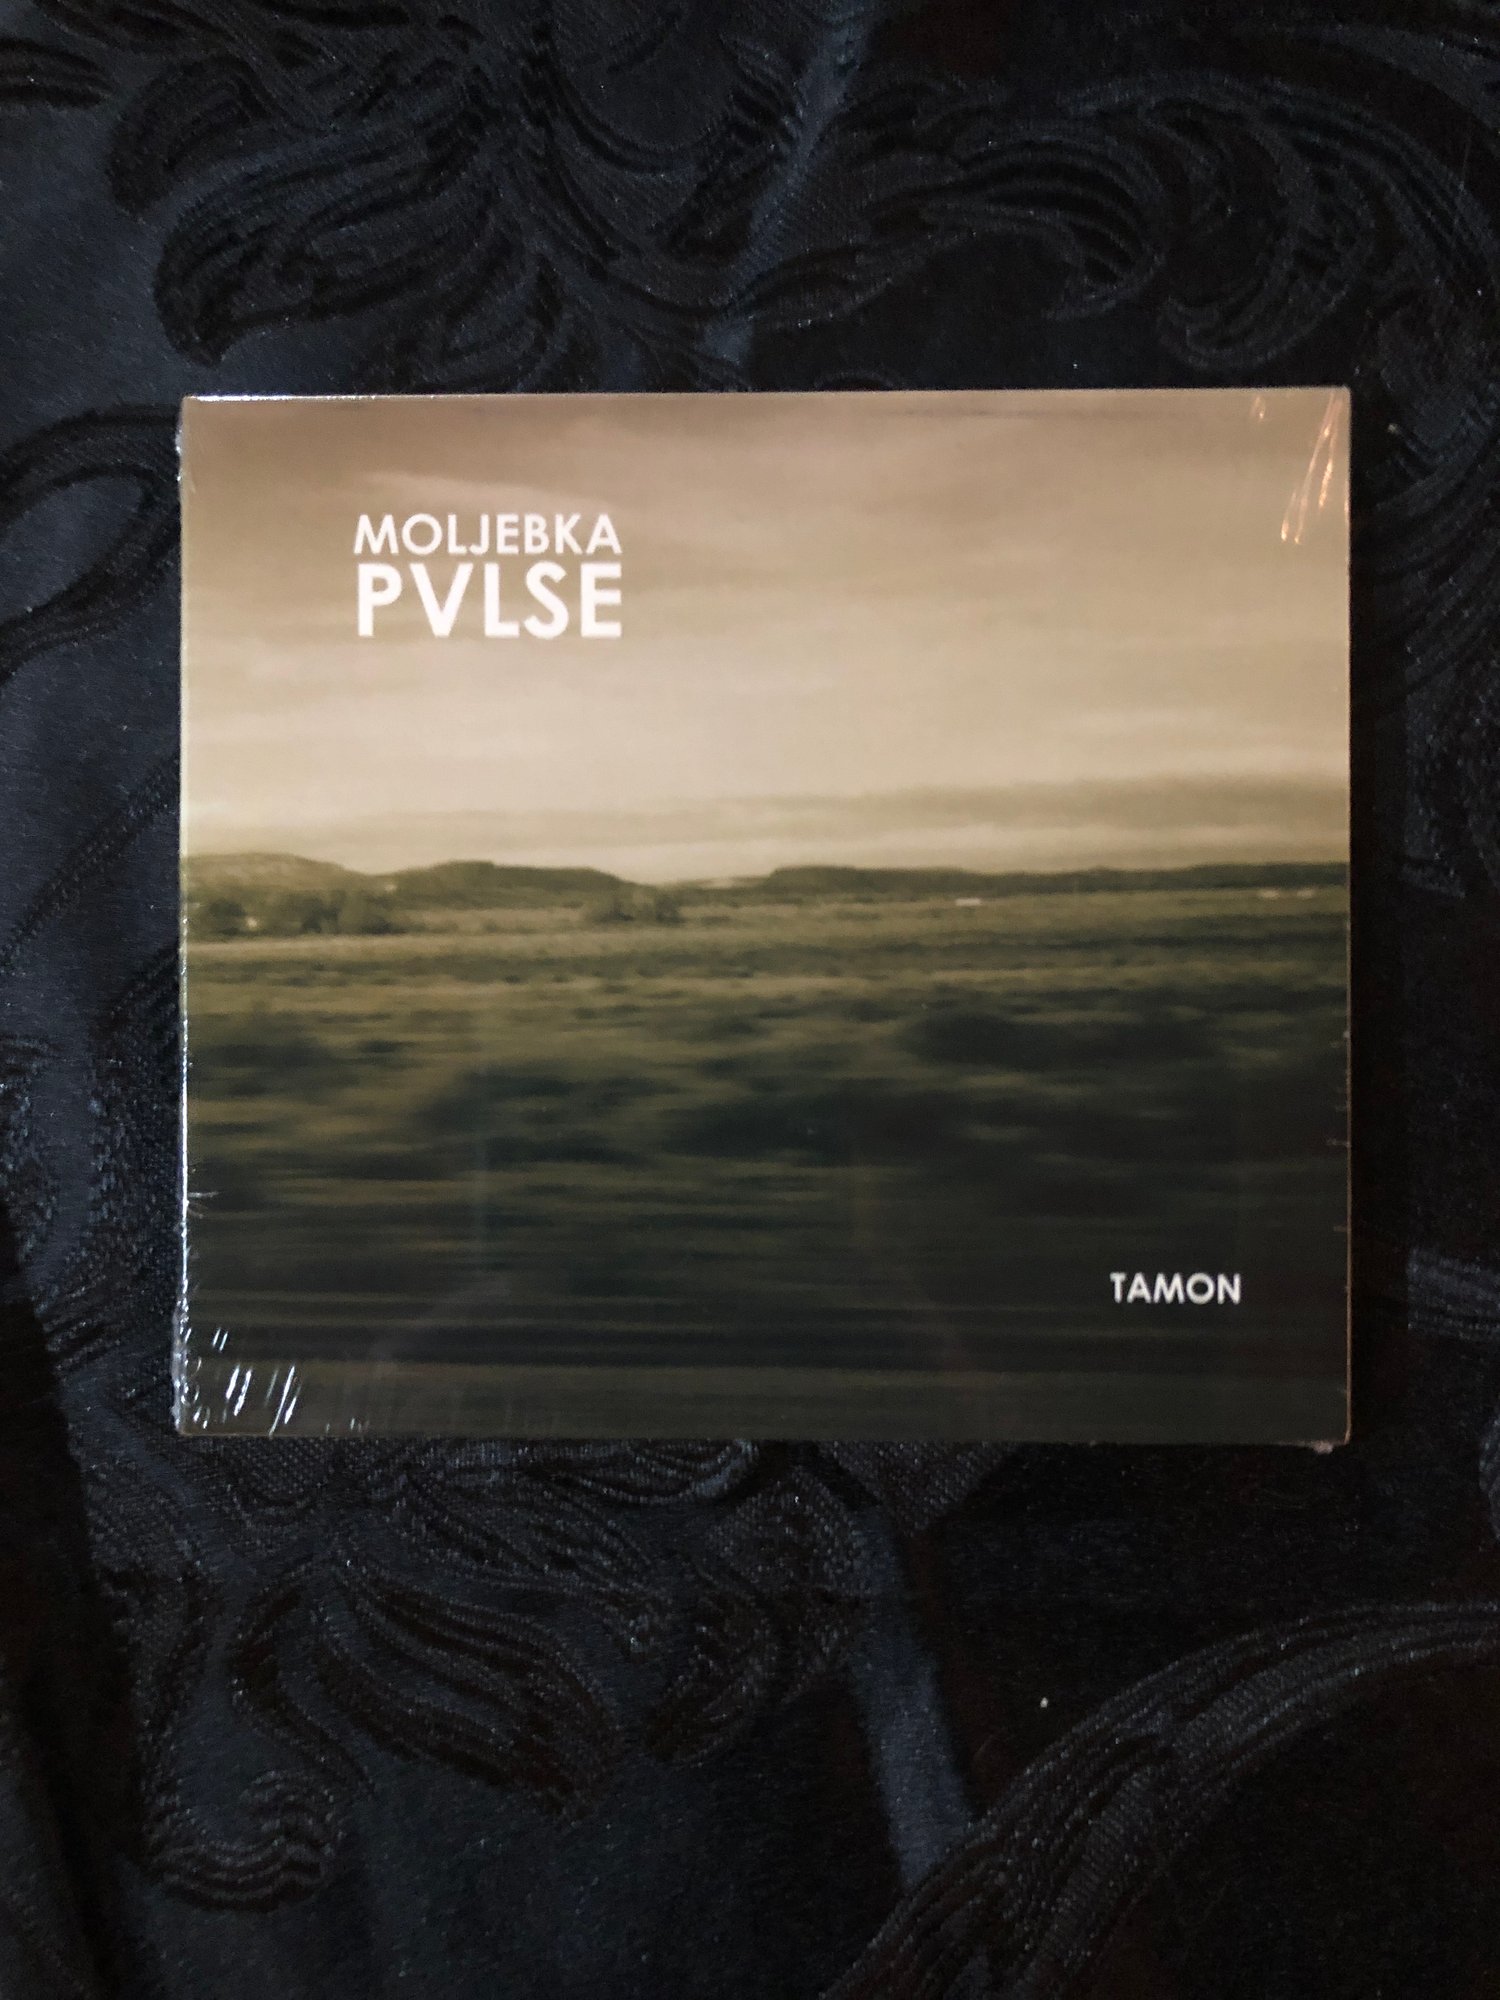 Moljebka Pulse - Tamon CD (Segerhuva)